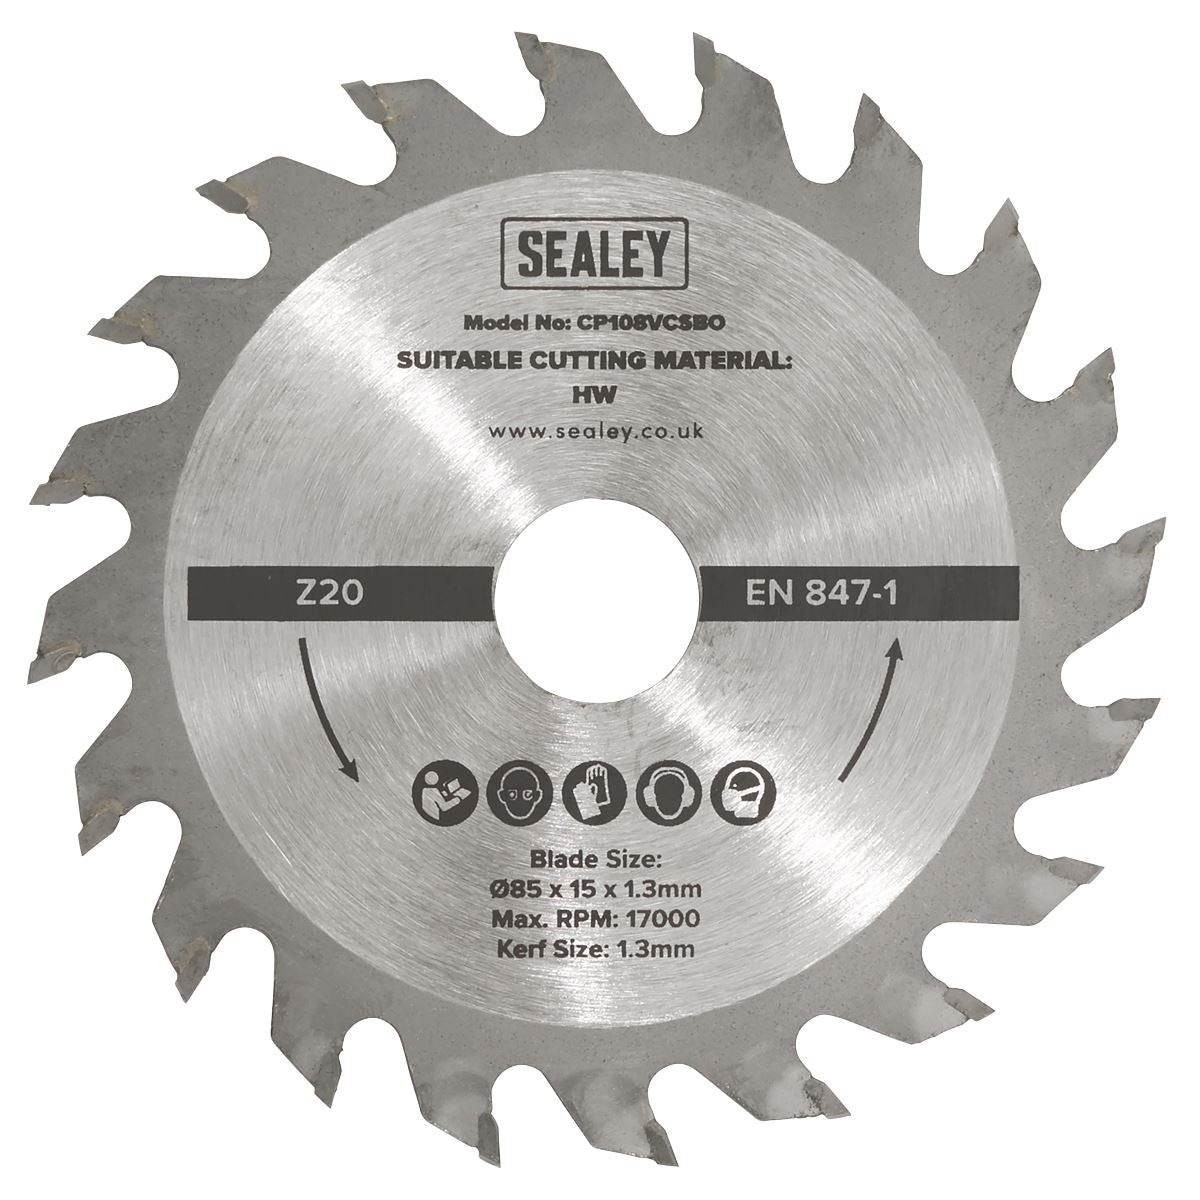 Sealey Circular Saw Blade  Ø85 x 15 x 1.3mm 20tpu